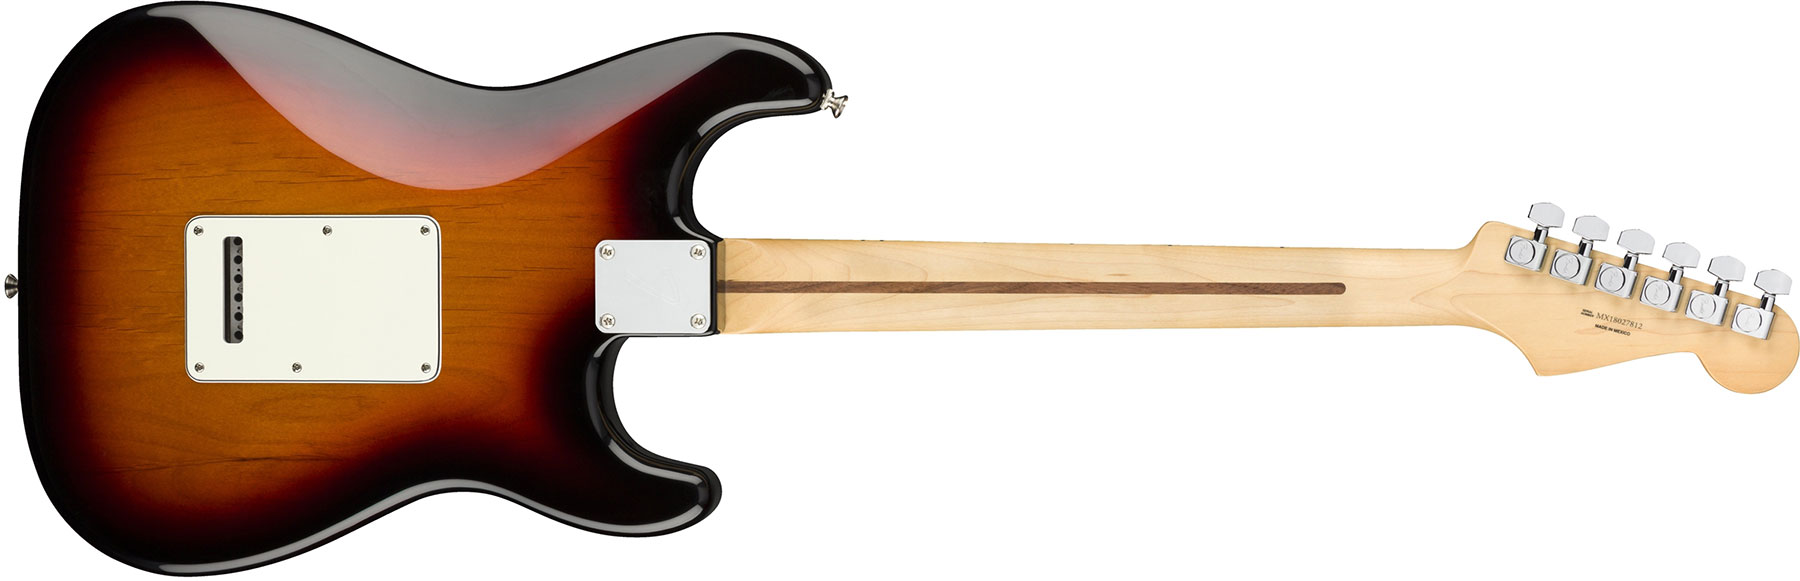 Fender Strat Player Lh Gaucher Mex Sss Mn - 3-color Sunburst - Guitarra electrica para zurdos - Variation 4